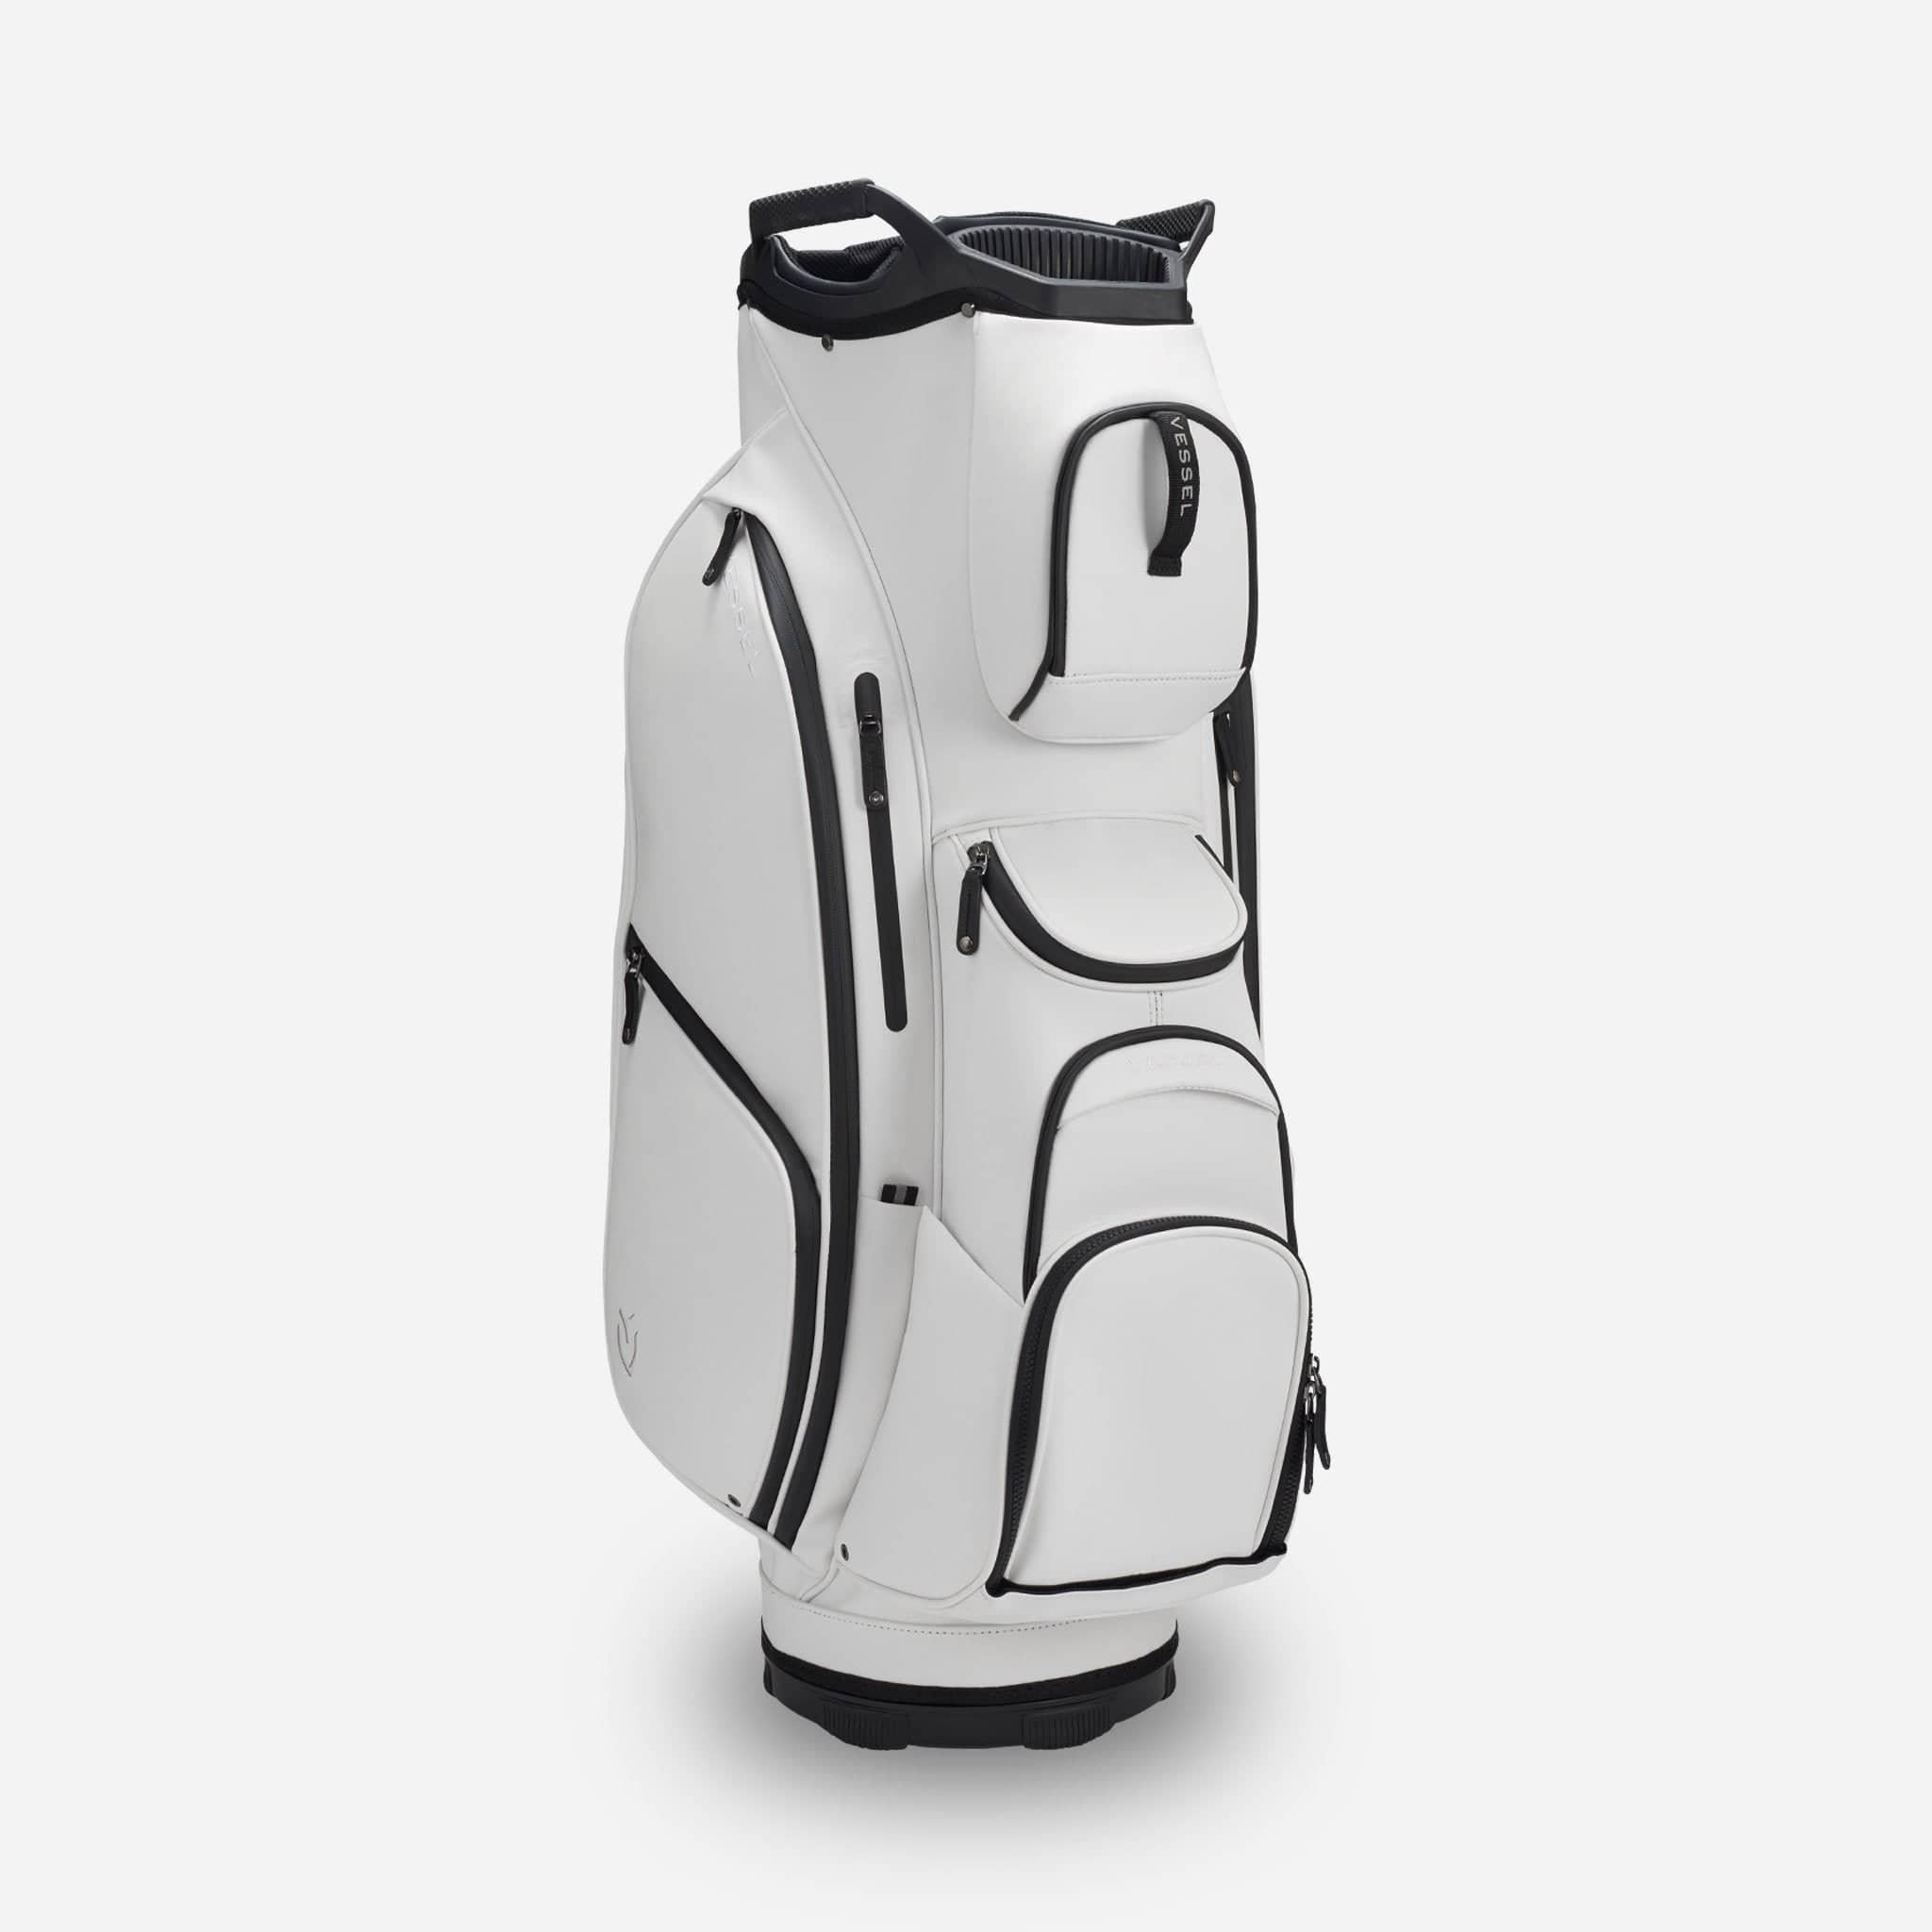 NEW LOOK: Vessel Lux Cart Bag